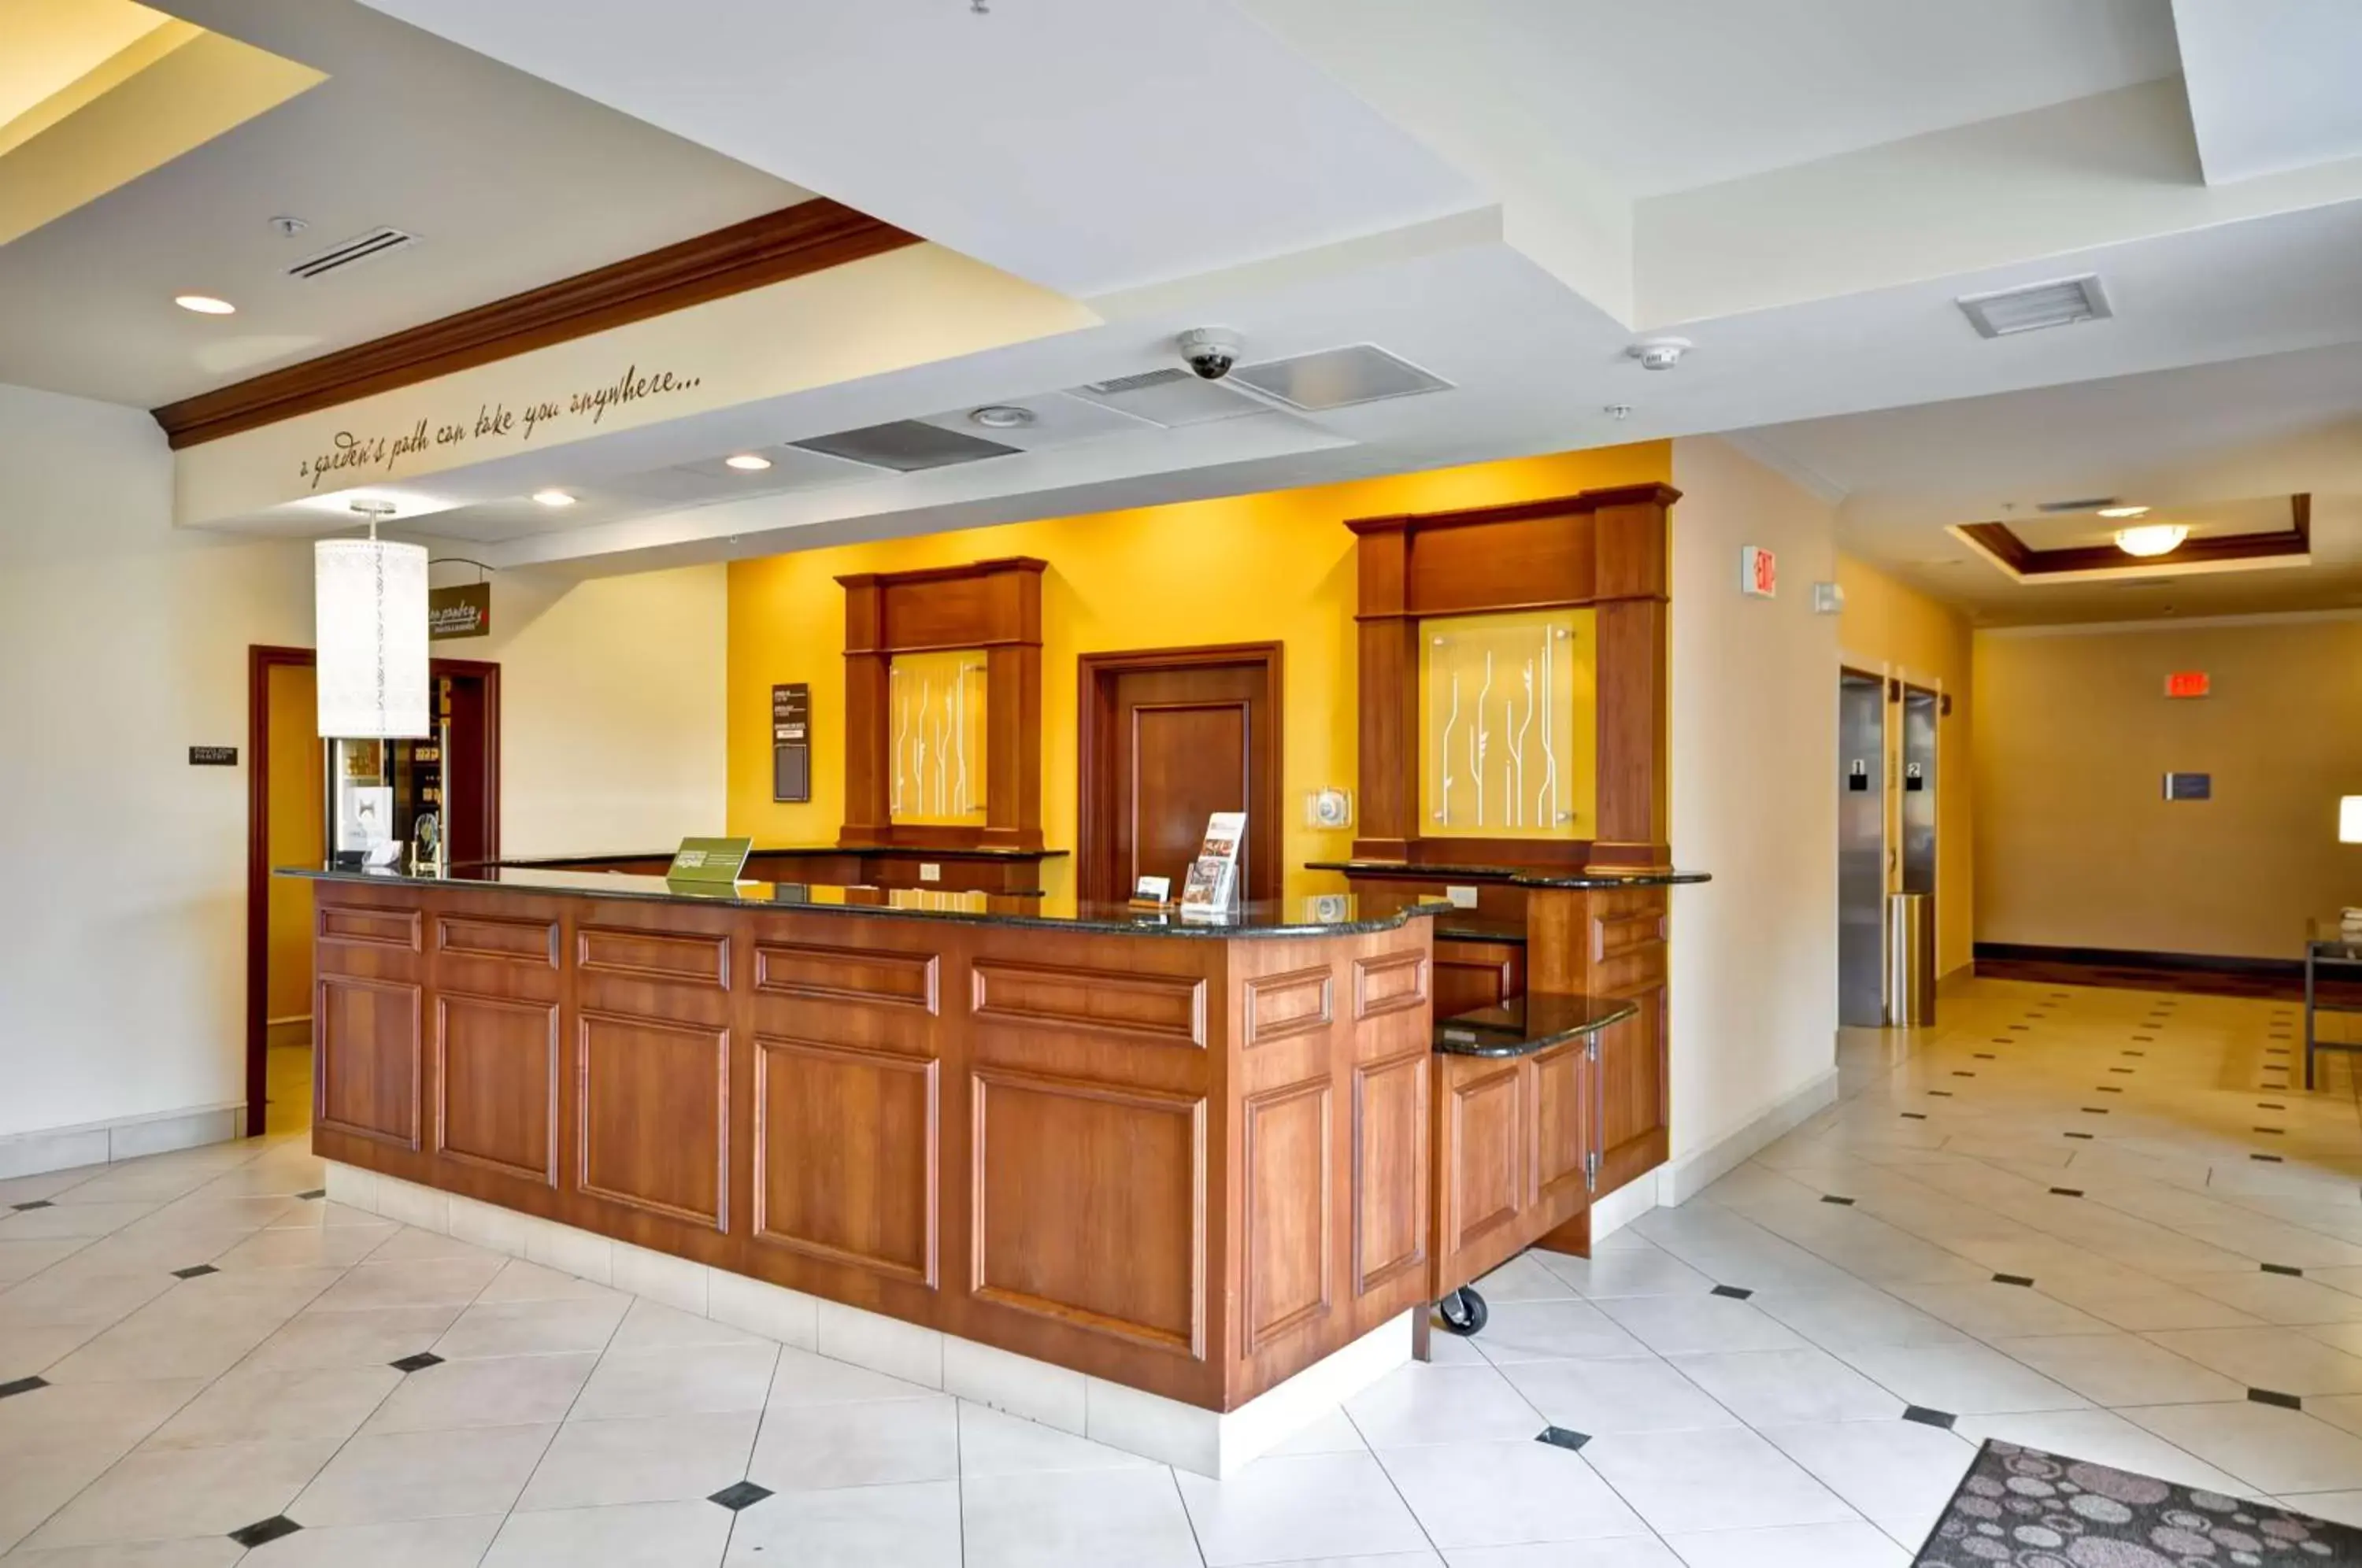 Lobby or reception, Lobby/Reception in Hilton Garden Inn Tampa Northwest/Oldsmar